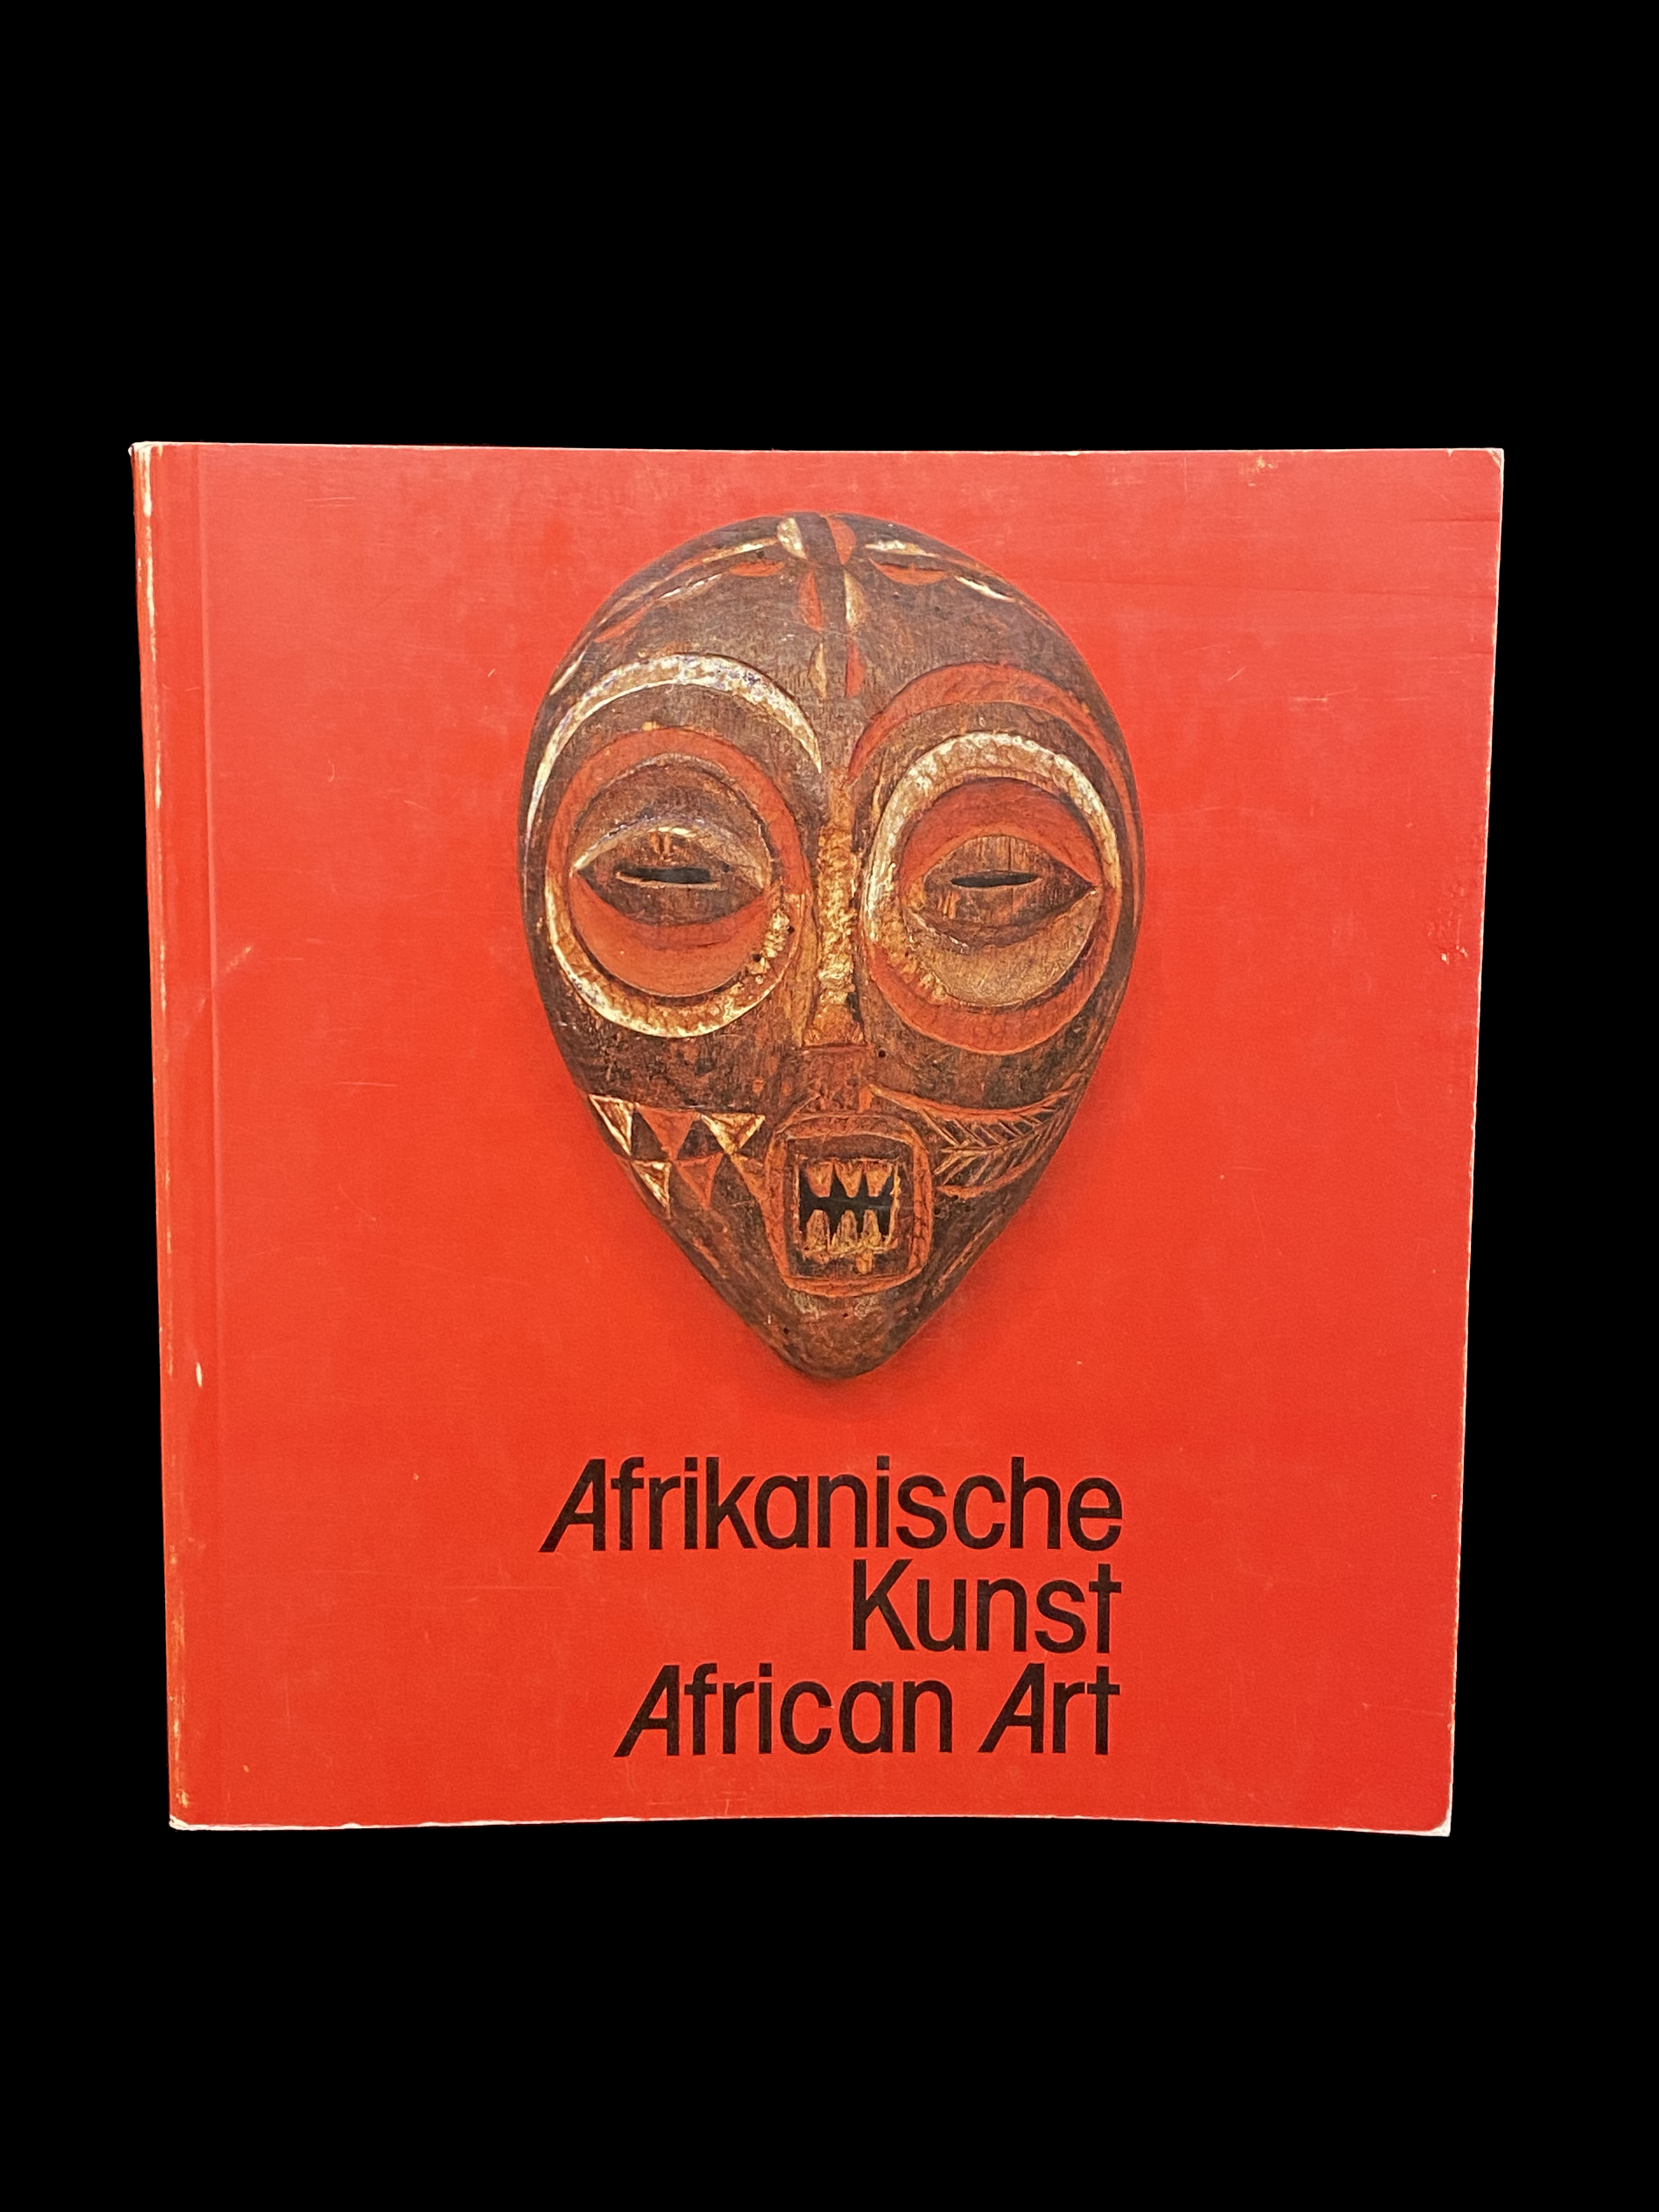 Afrikanische Kunst - African Art by Karl-Ferdinand SCHAEDLER